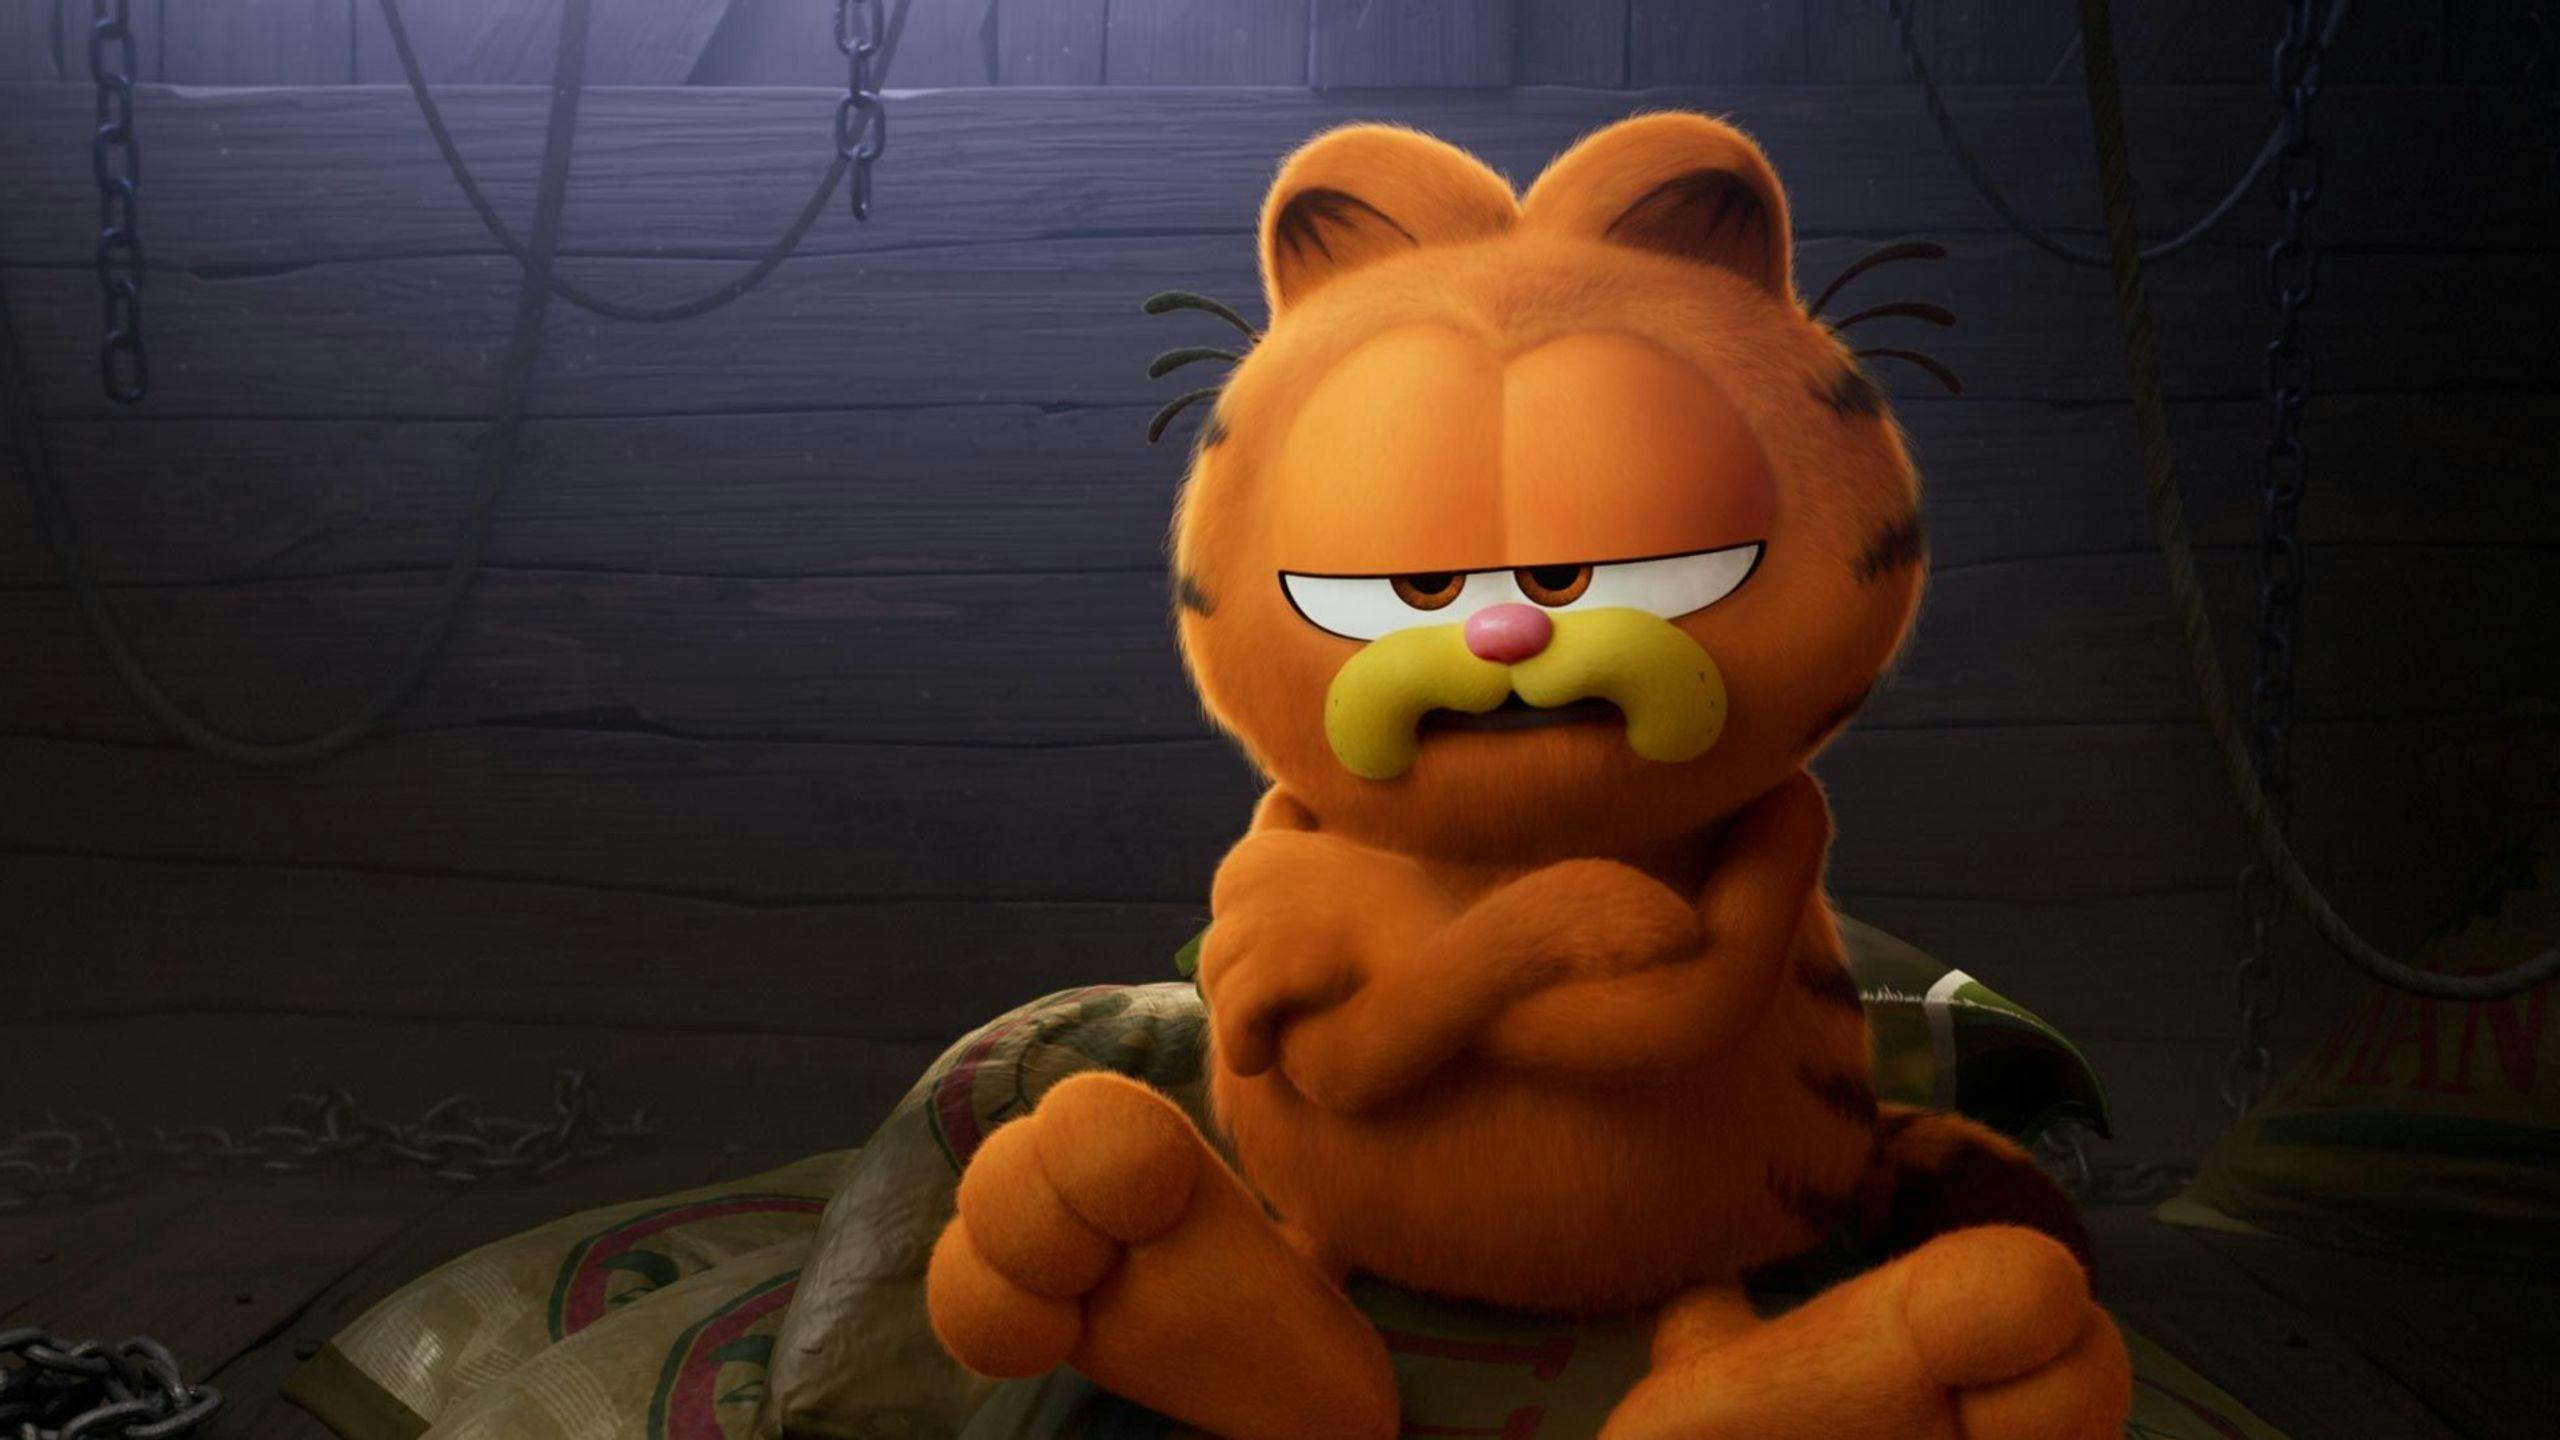 Fotograma promocional de 'Garfield. La película' con su gato protagonista de brazos cruzados y malhumorado